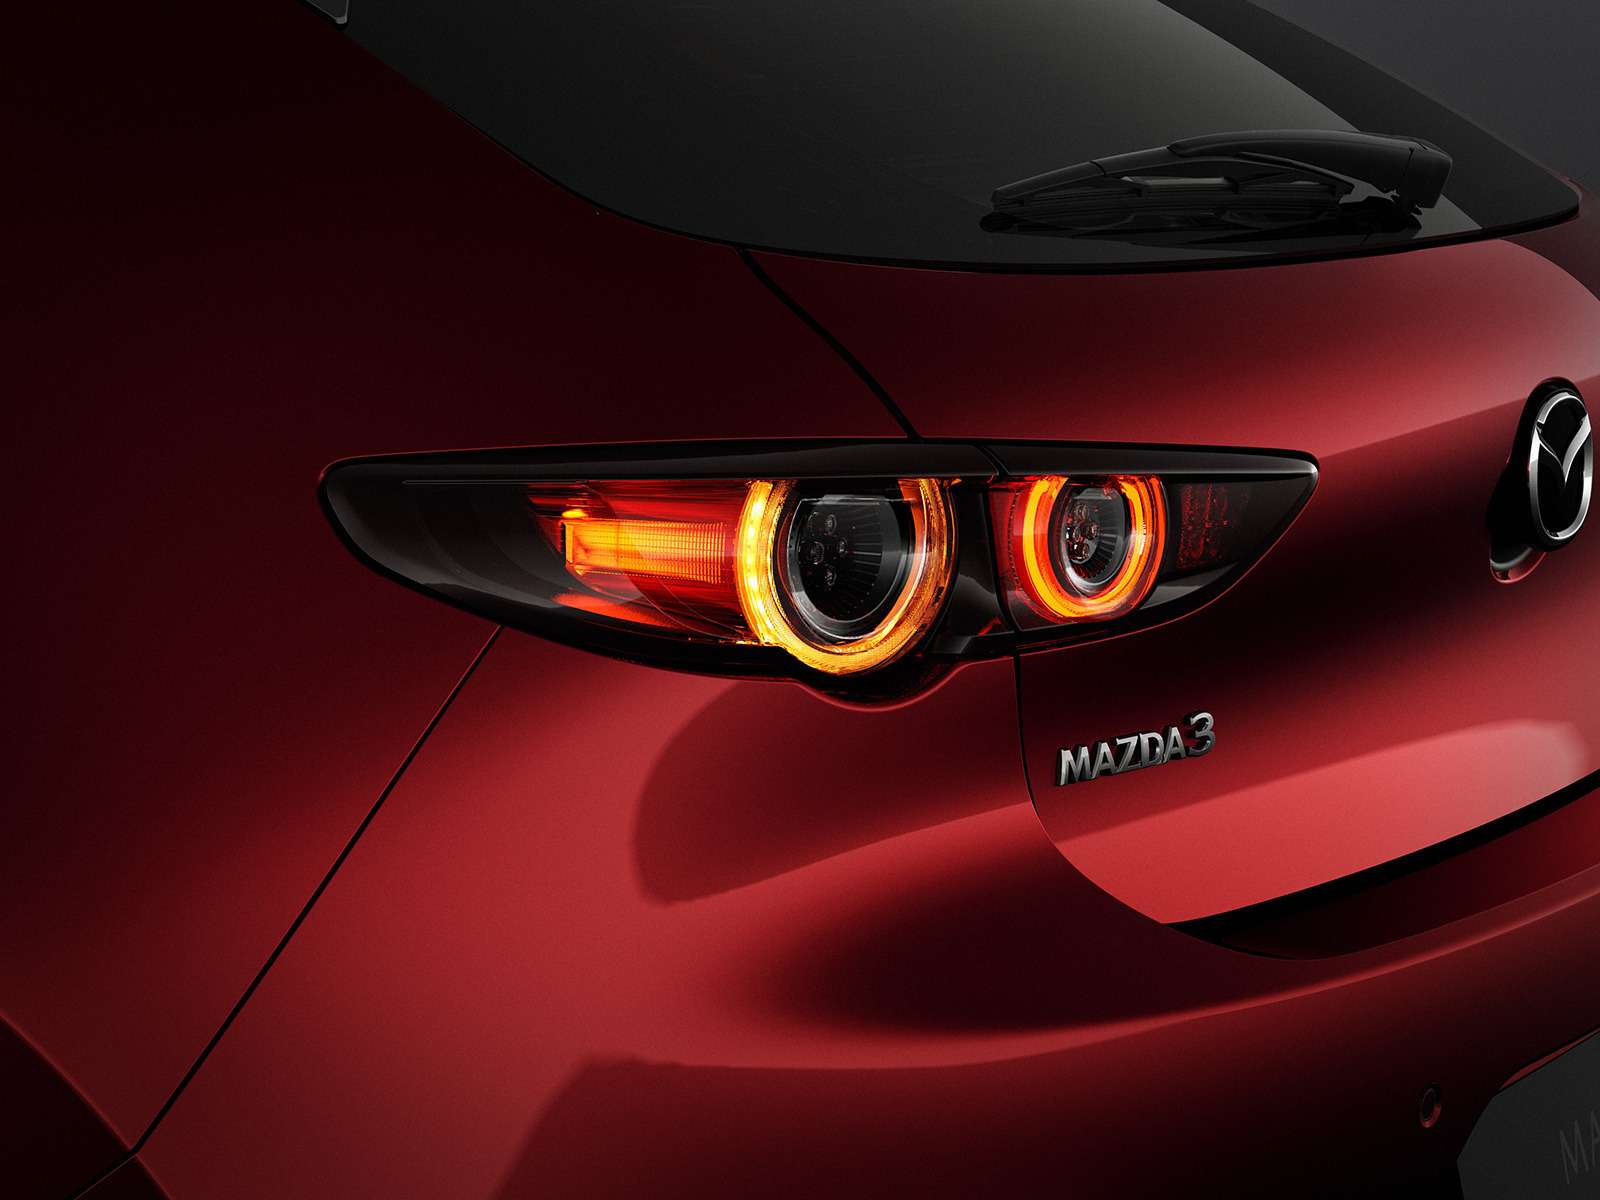 Новая Mazda 3: рассматриваем в деталях со всех сторон — фото 928211